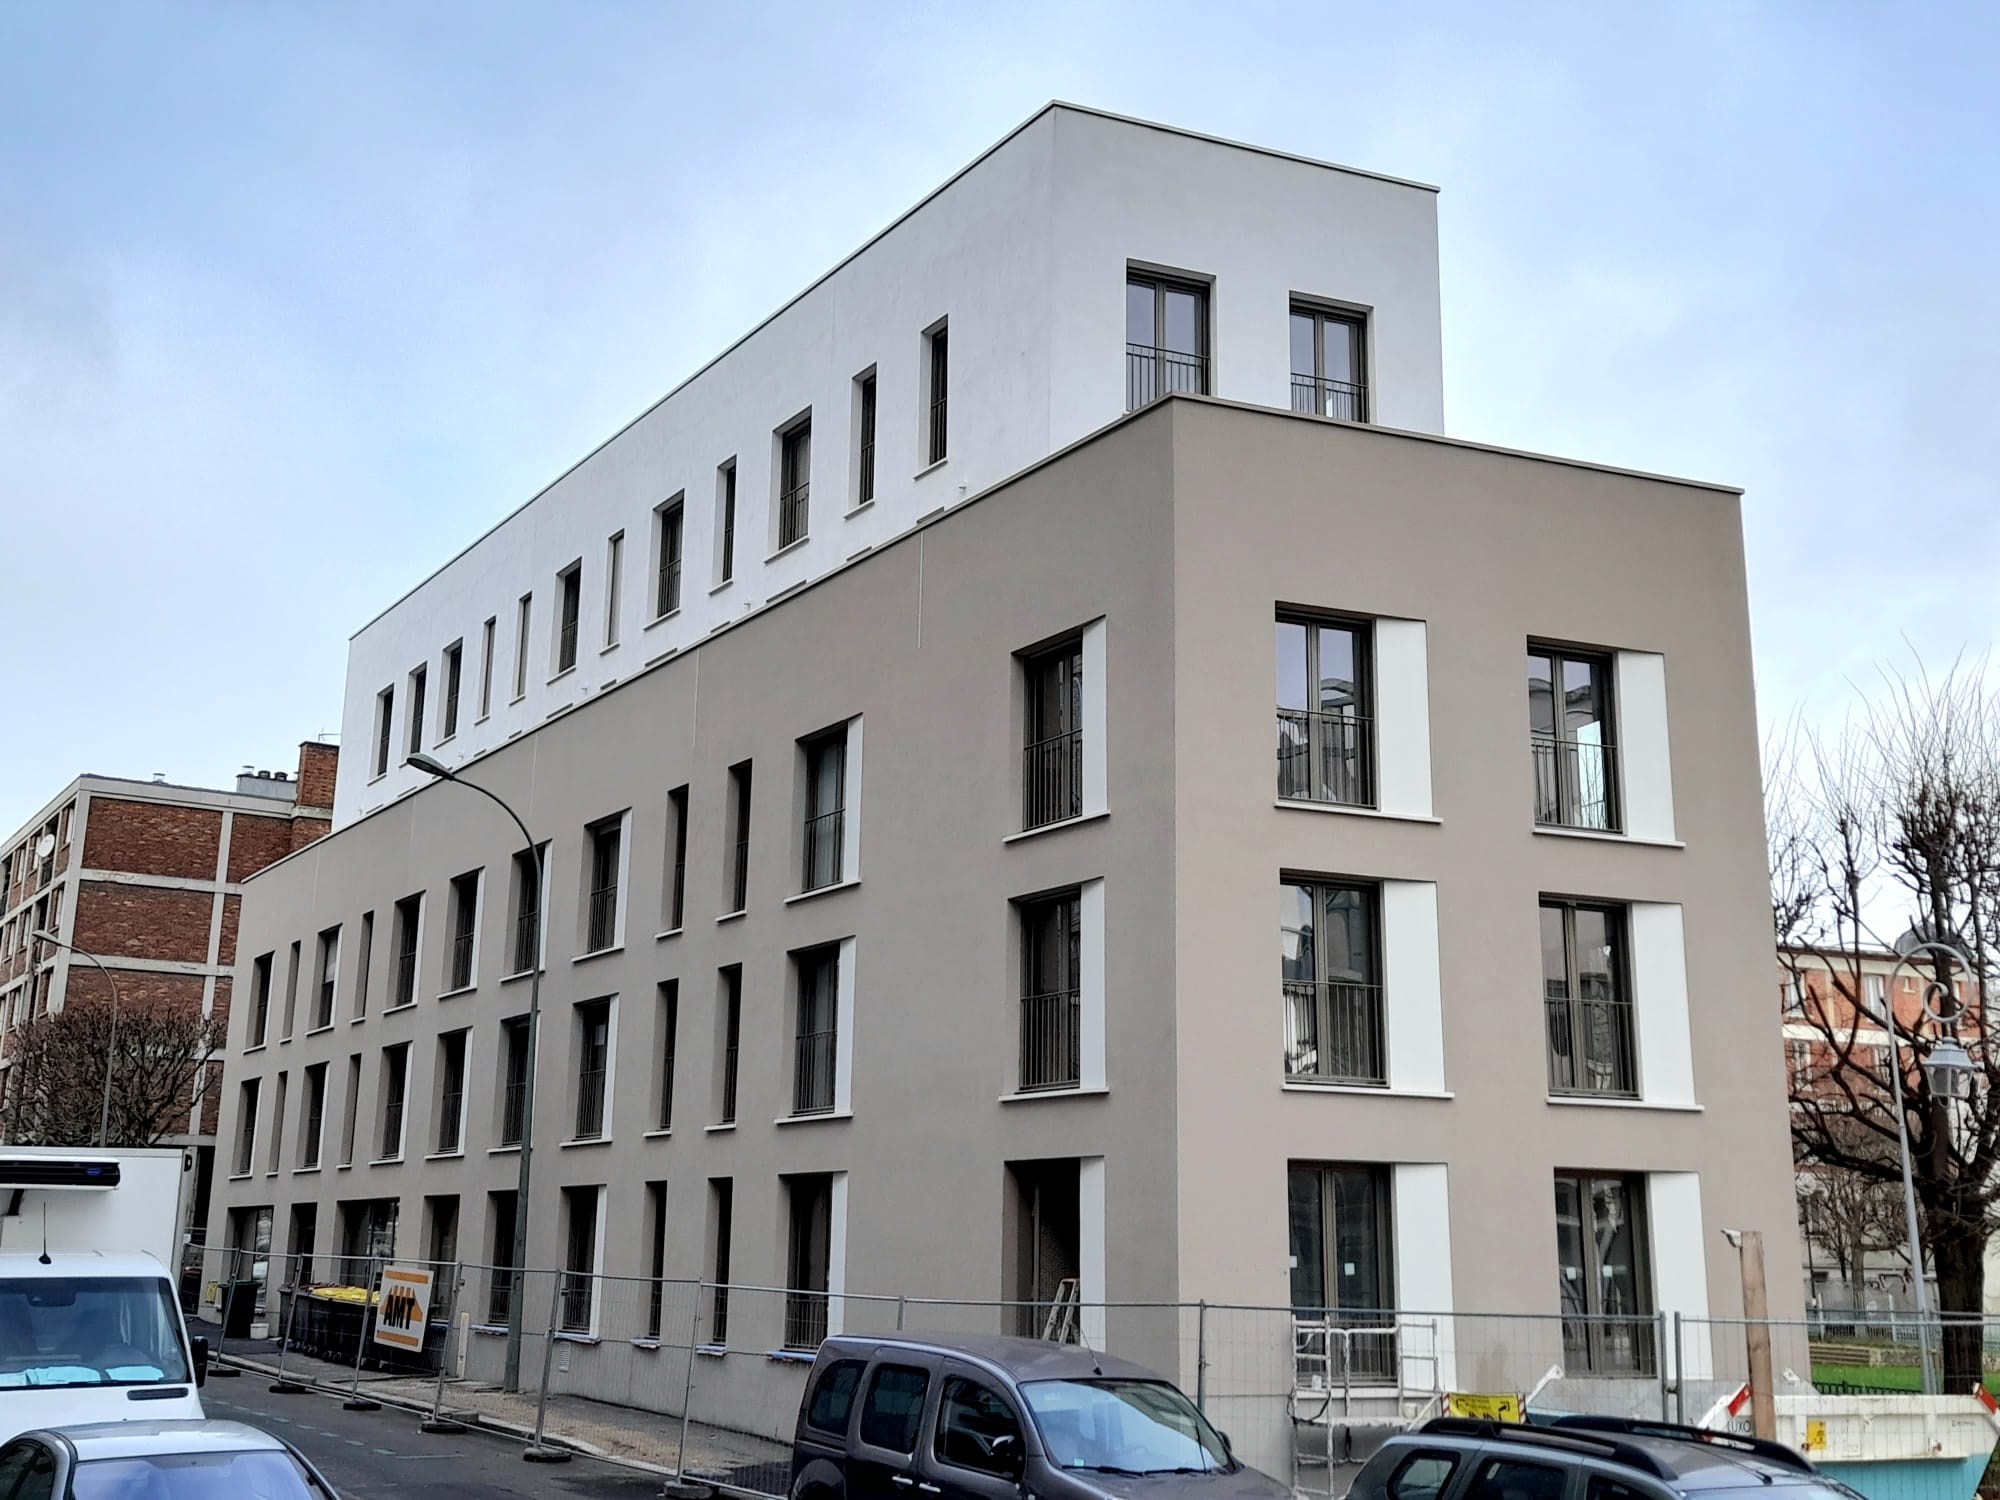 Maison D'aspasie Arcueil : résidence intergénérationnelle incluant un projet d'habitat inclusif pour seniors